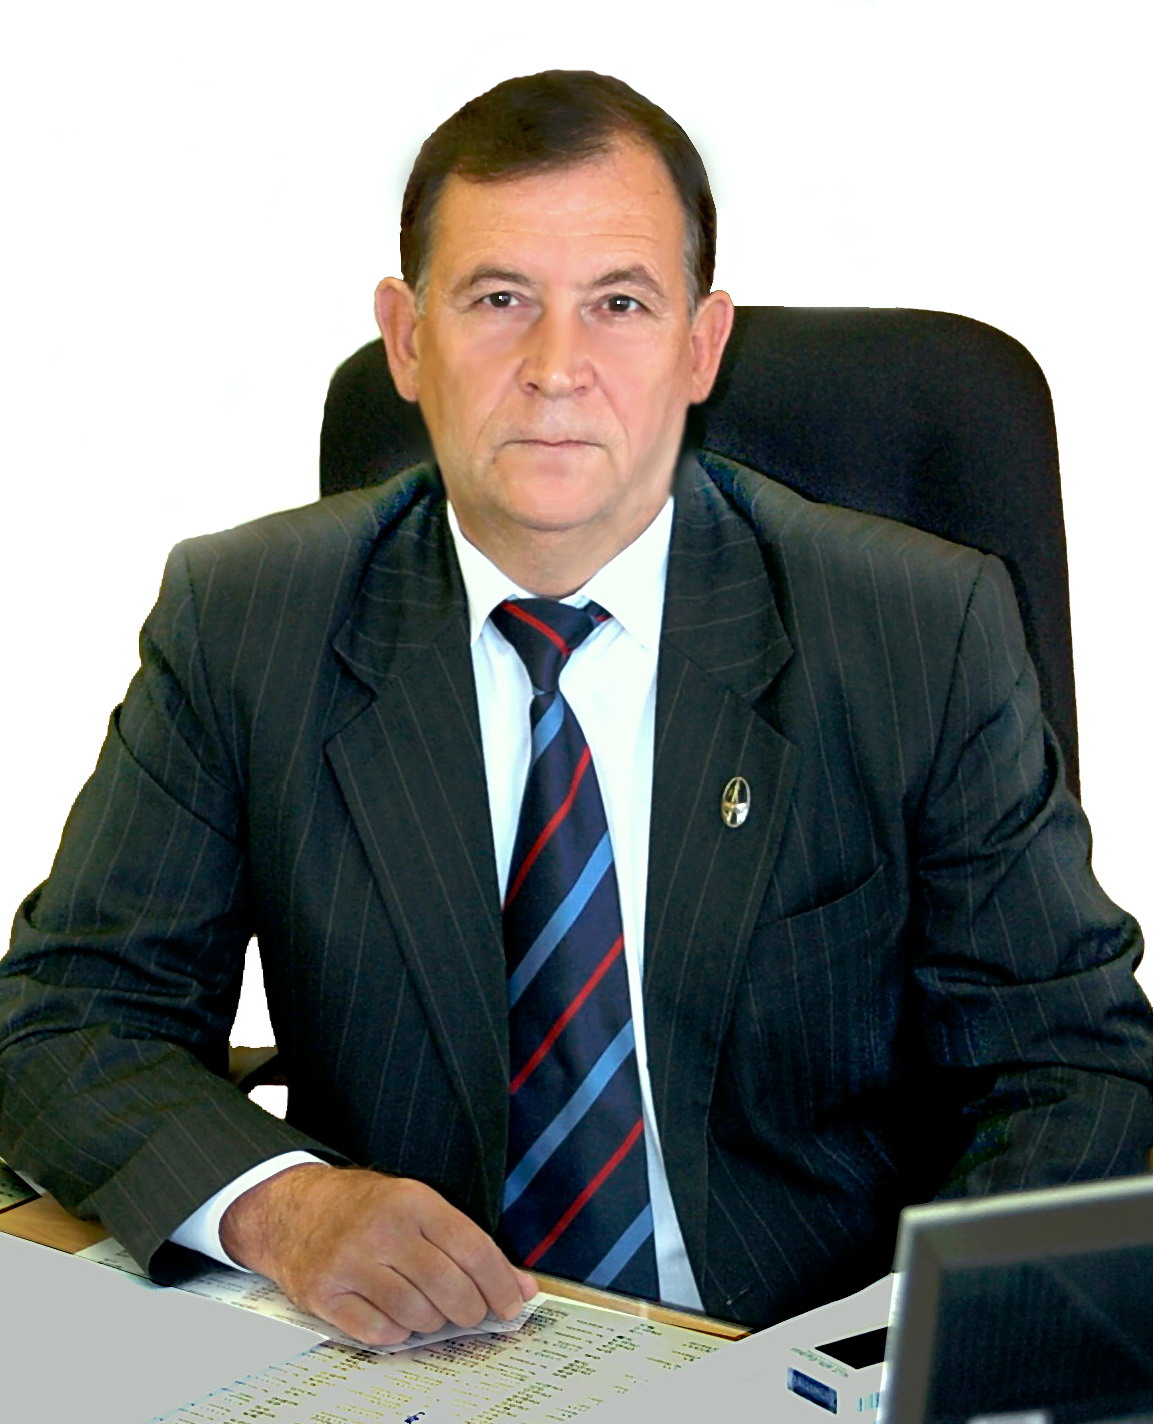 Немтинов Валерий Анатольевич, генеральный директор АО "УПП "Вектор" 